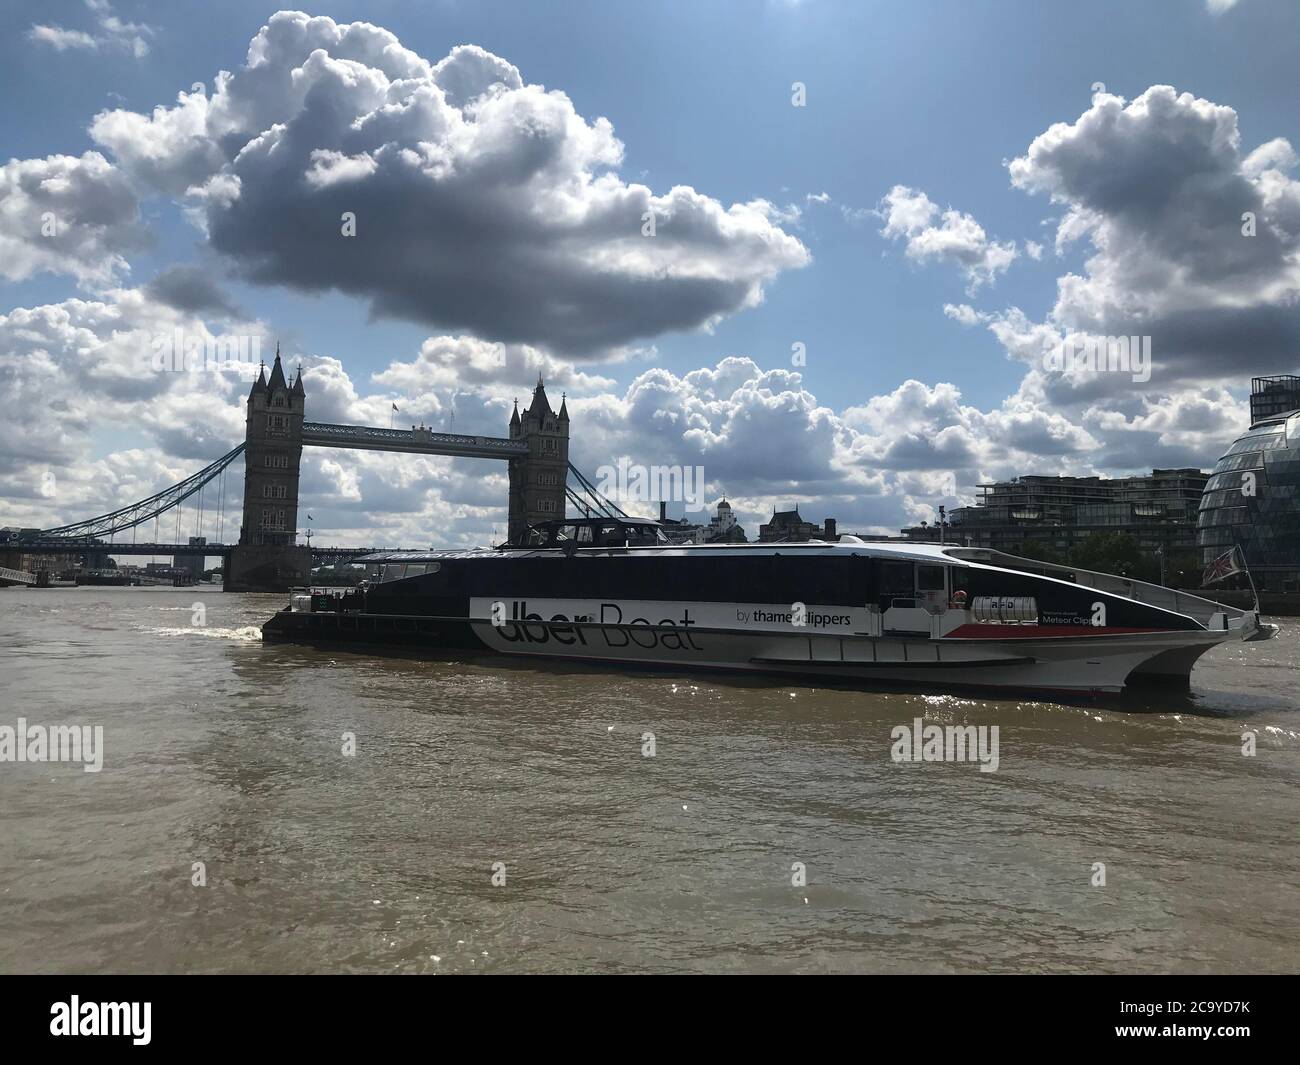 Montag, 3. August 2020, Uber boat by Thames Clippers startet heute in London Großbritannien können Londoner jetzt Tickets für Thames Clipper direkt über ihre Uber App buchen Stockfoto